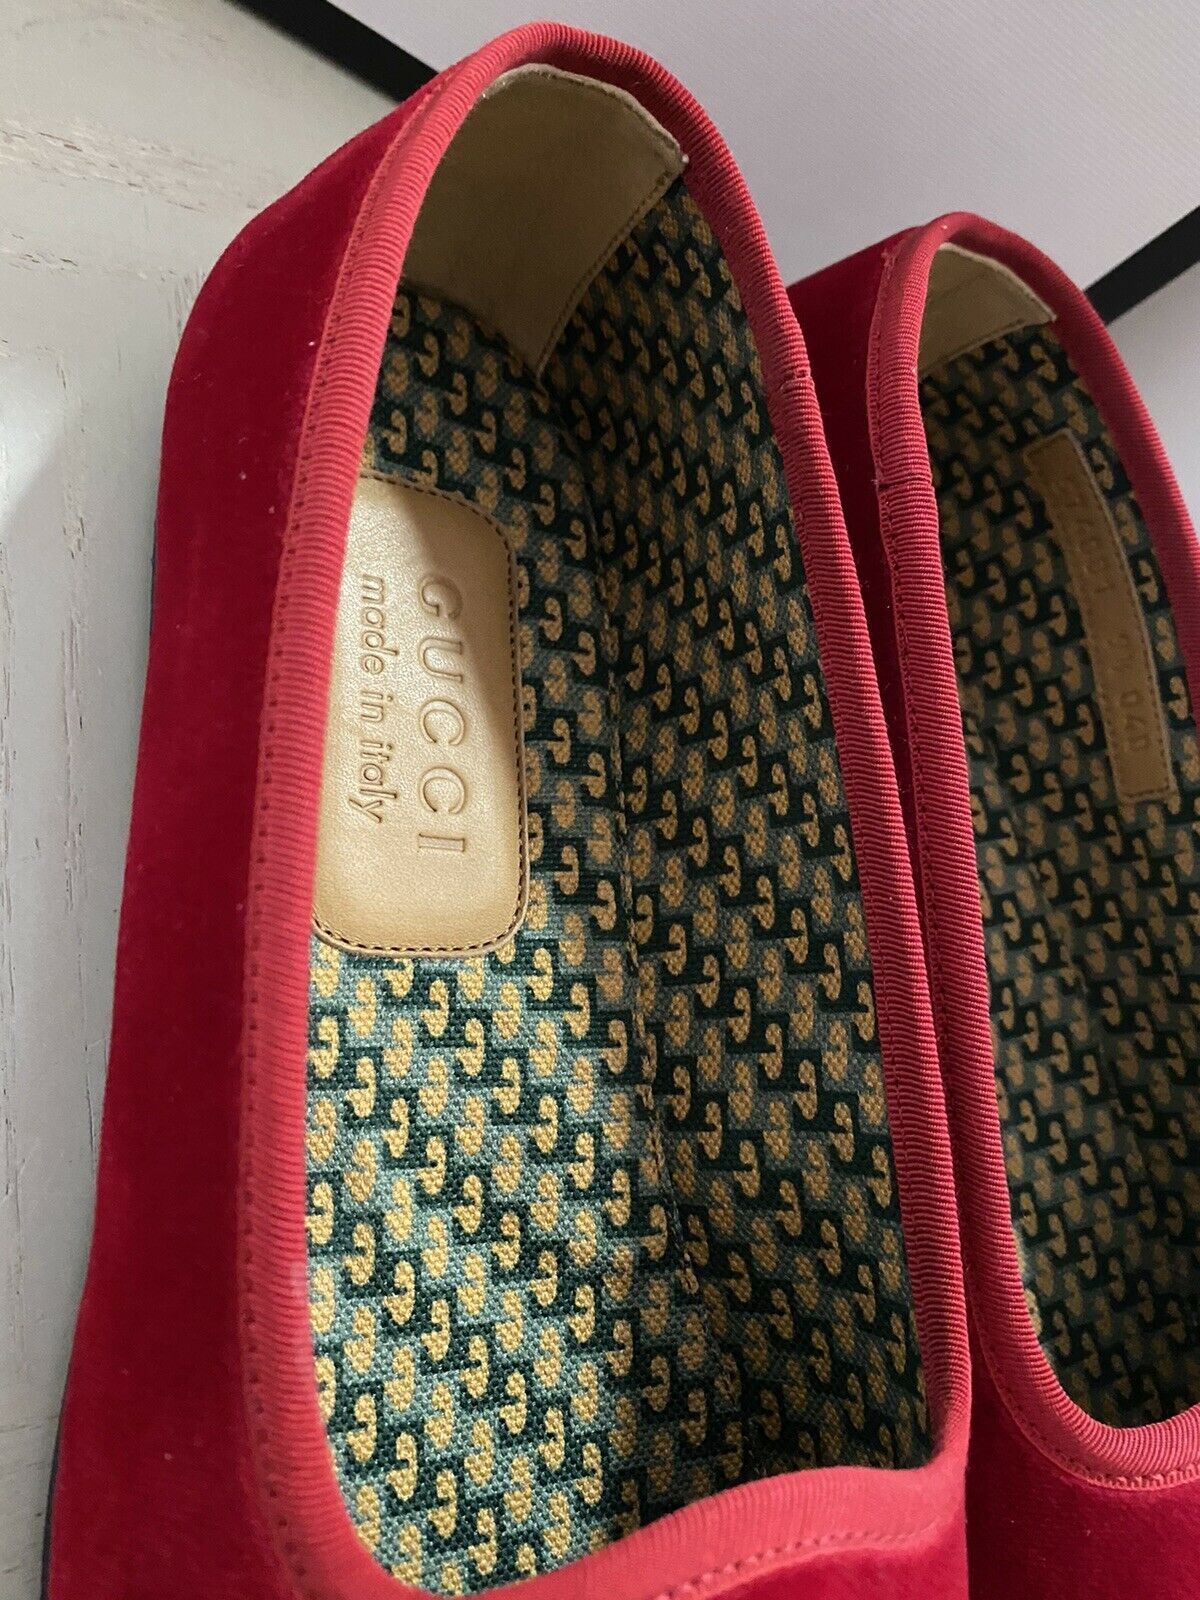 NIB 980 $ Gucci Herren-Loafer-Schuhe aus Samt, Rot, 8 US / 7 UK